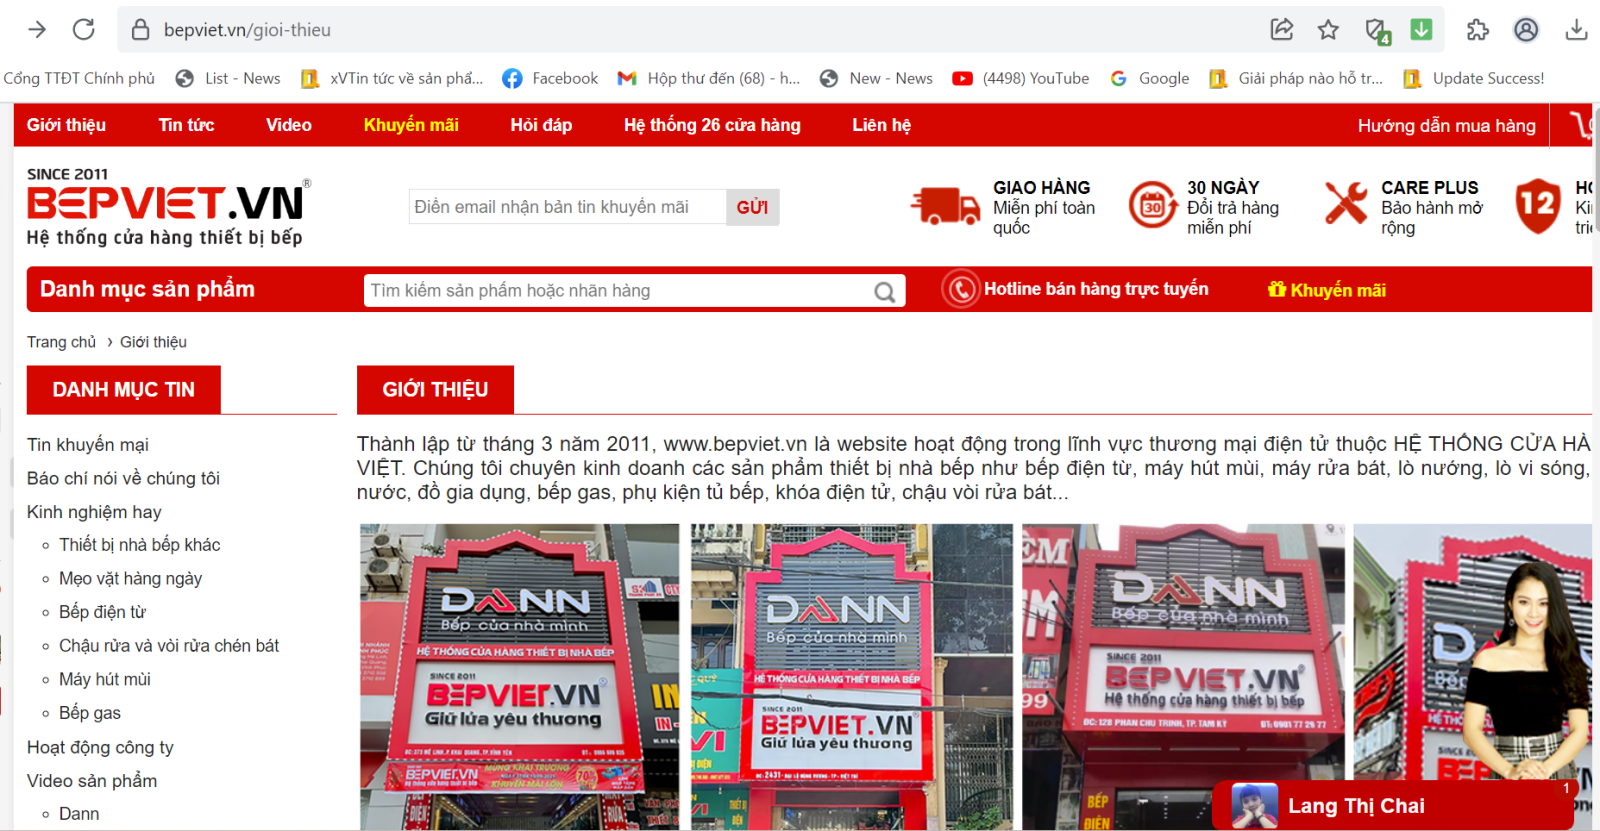 Website hệ thống Bếp Việt (sở hữu bởi Công ty TNHH Dann Việt Nam).